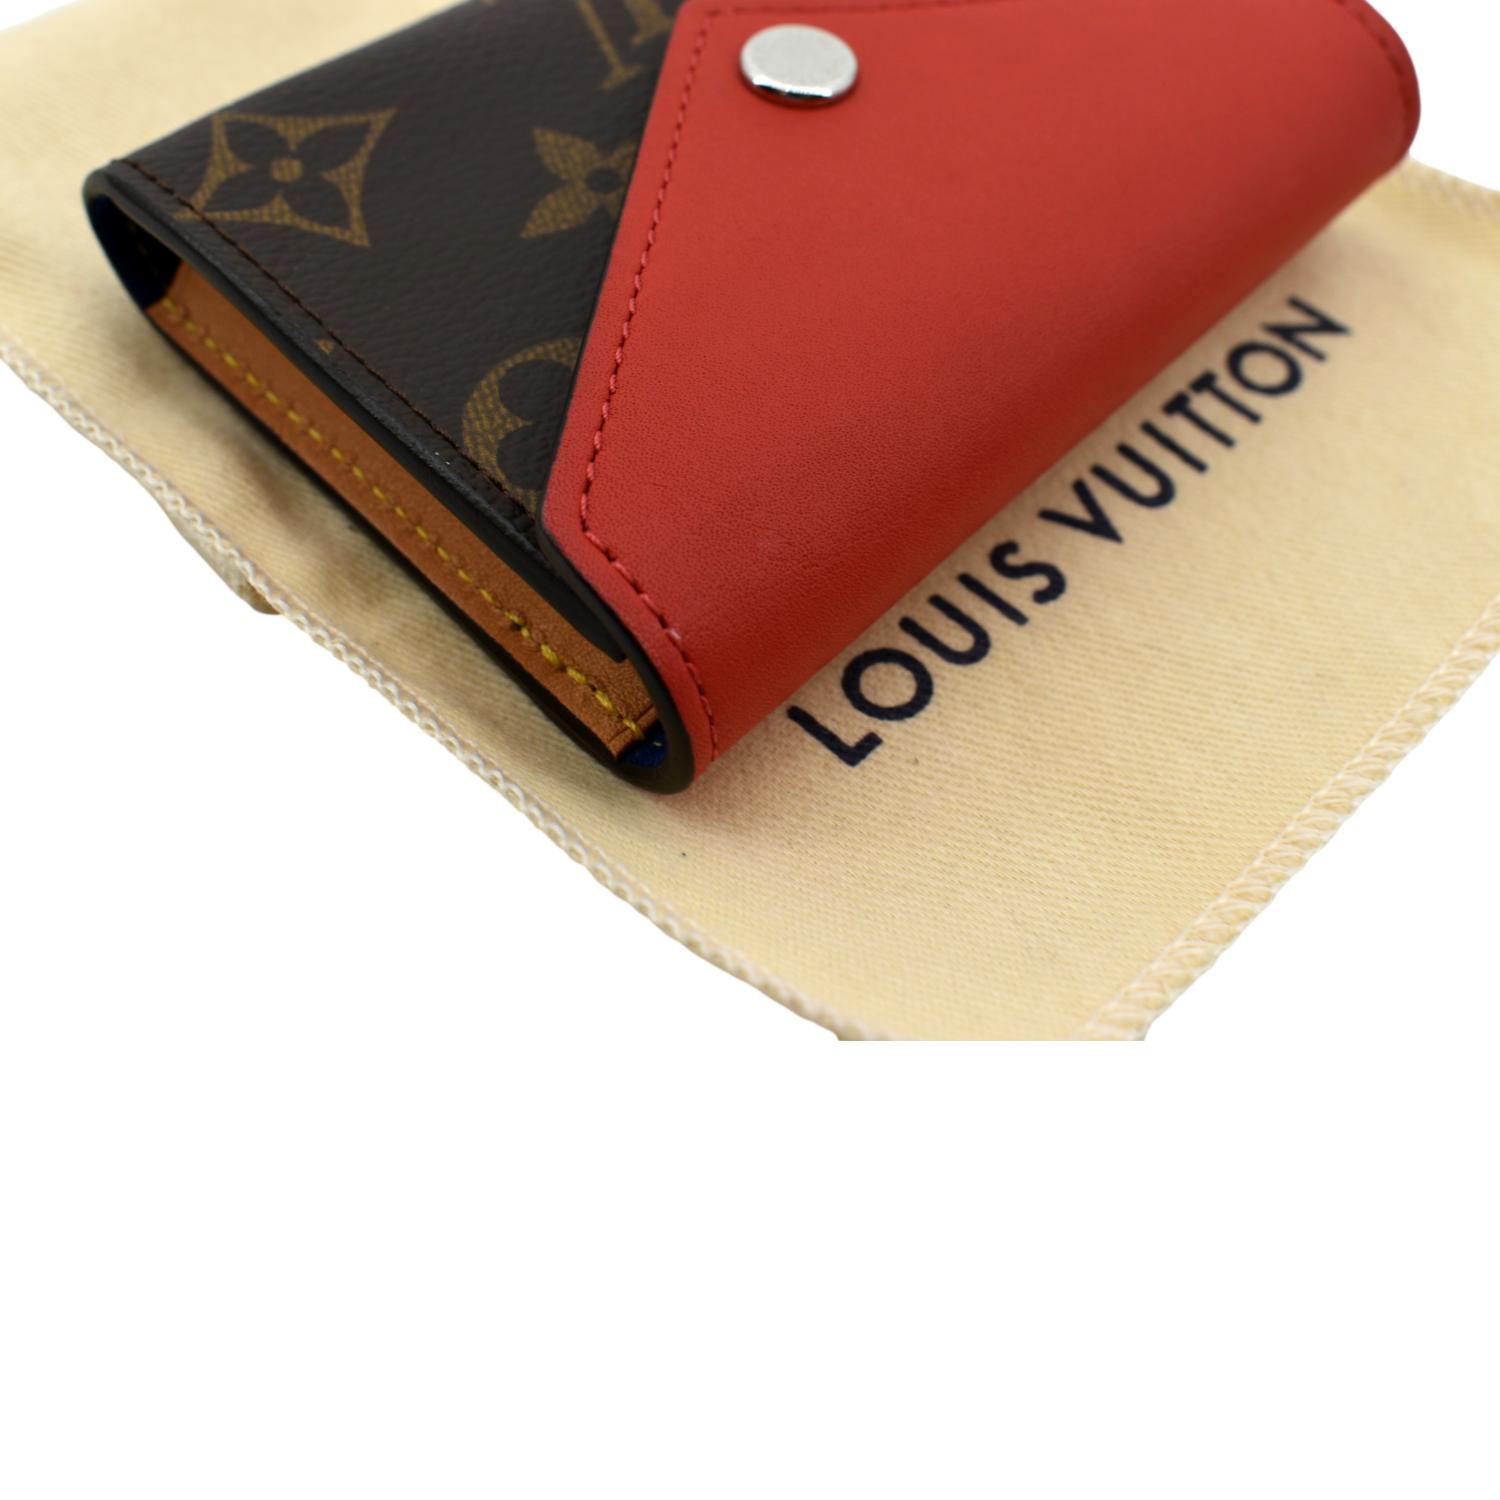 Louis Vuitton Zoe Wallet - Luxe Du Jour